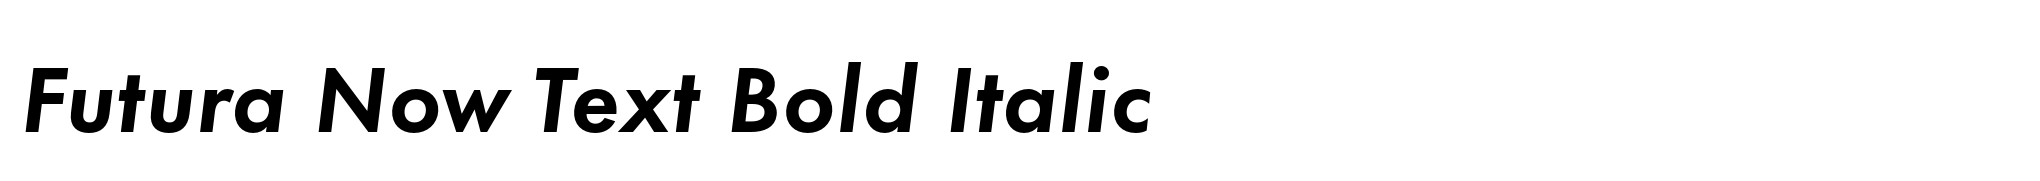 Futura Now Text Bold Italic image